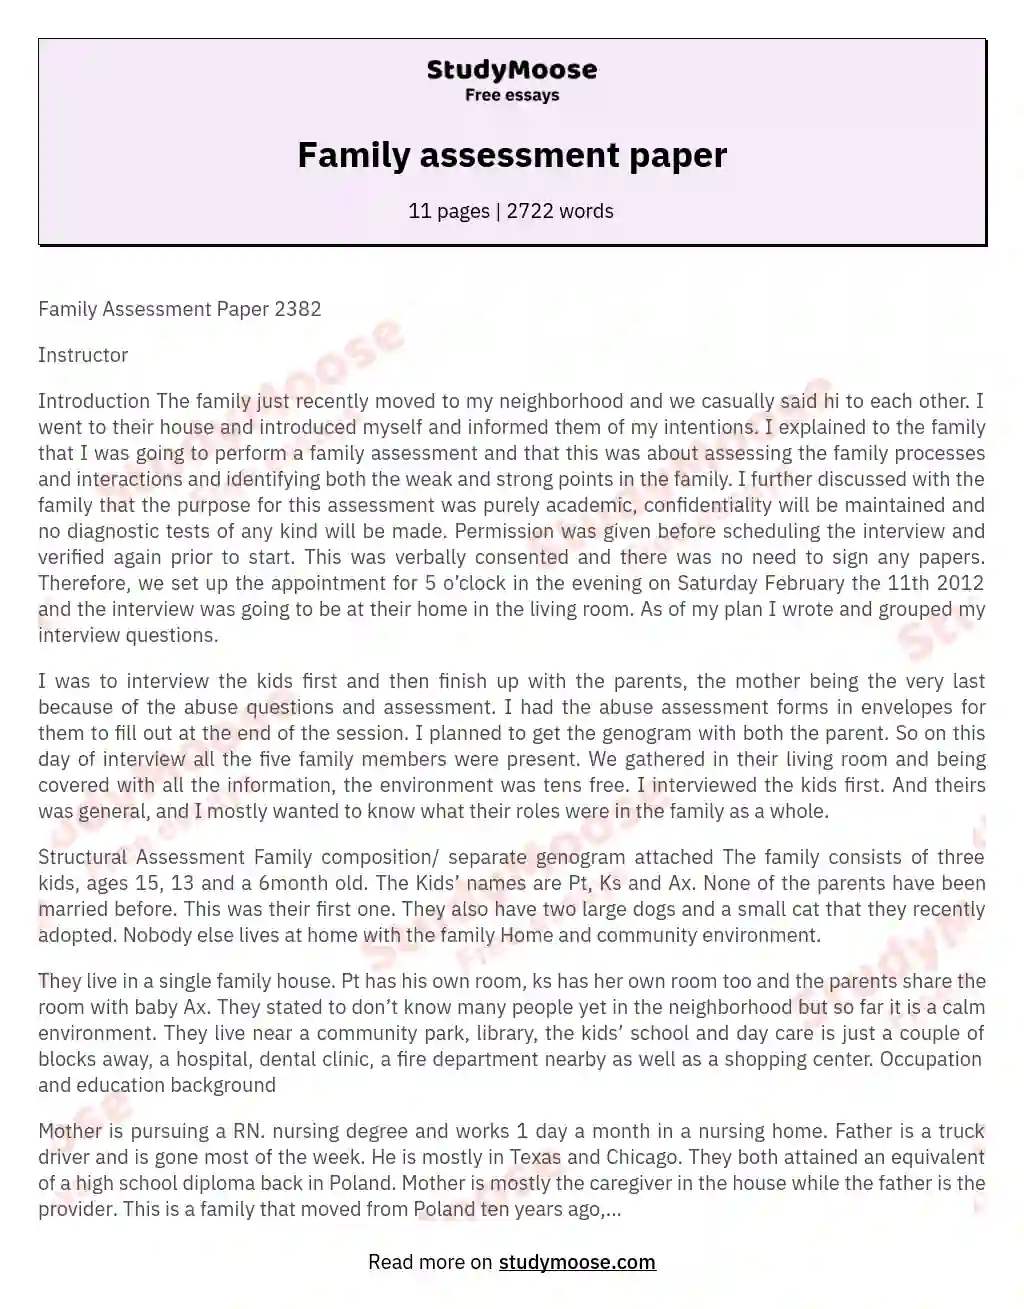 Family assessment paper essay